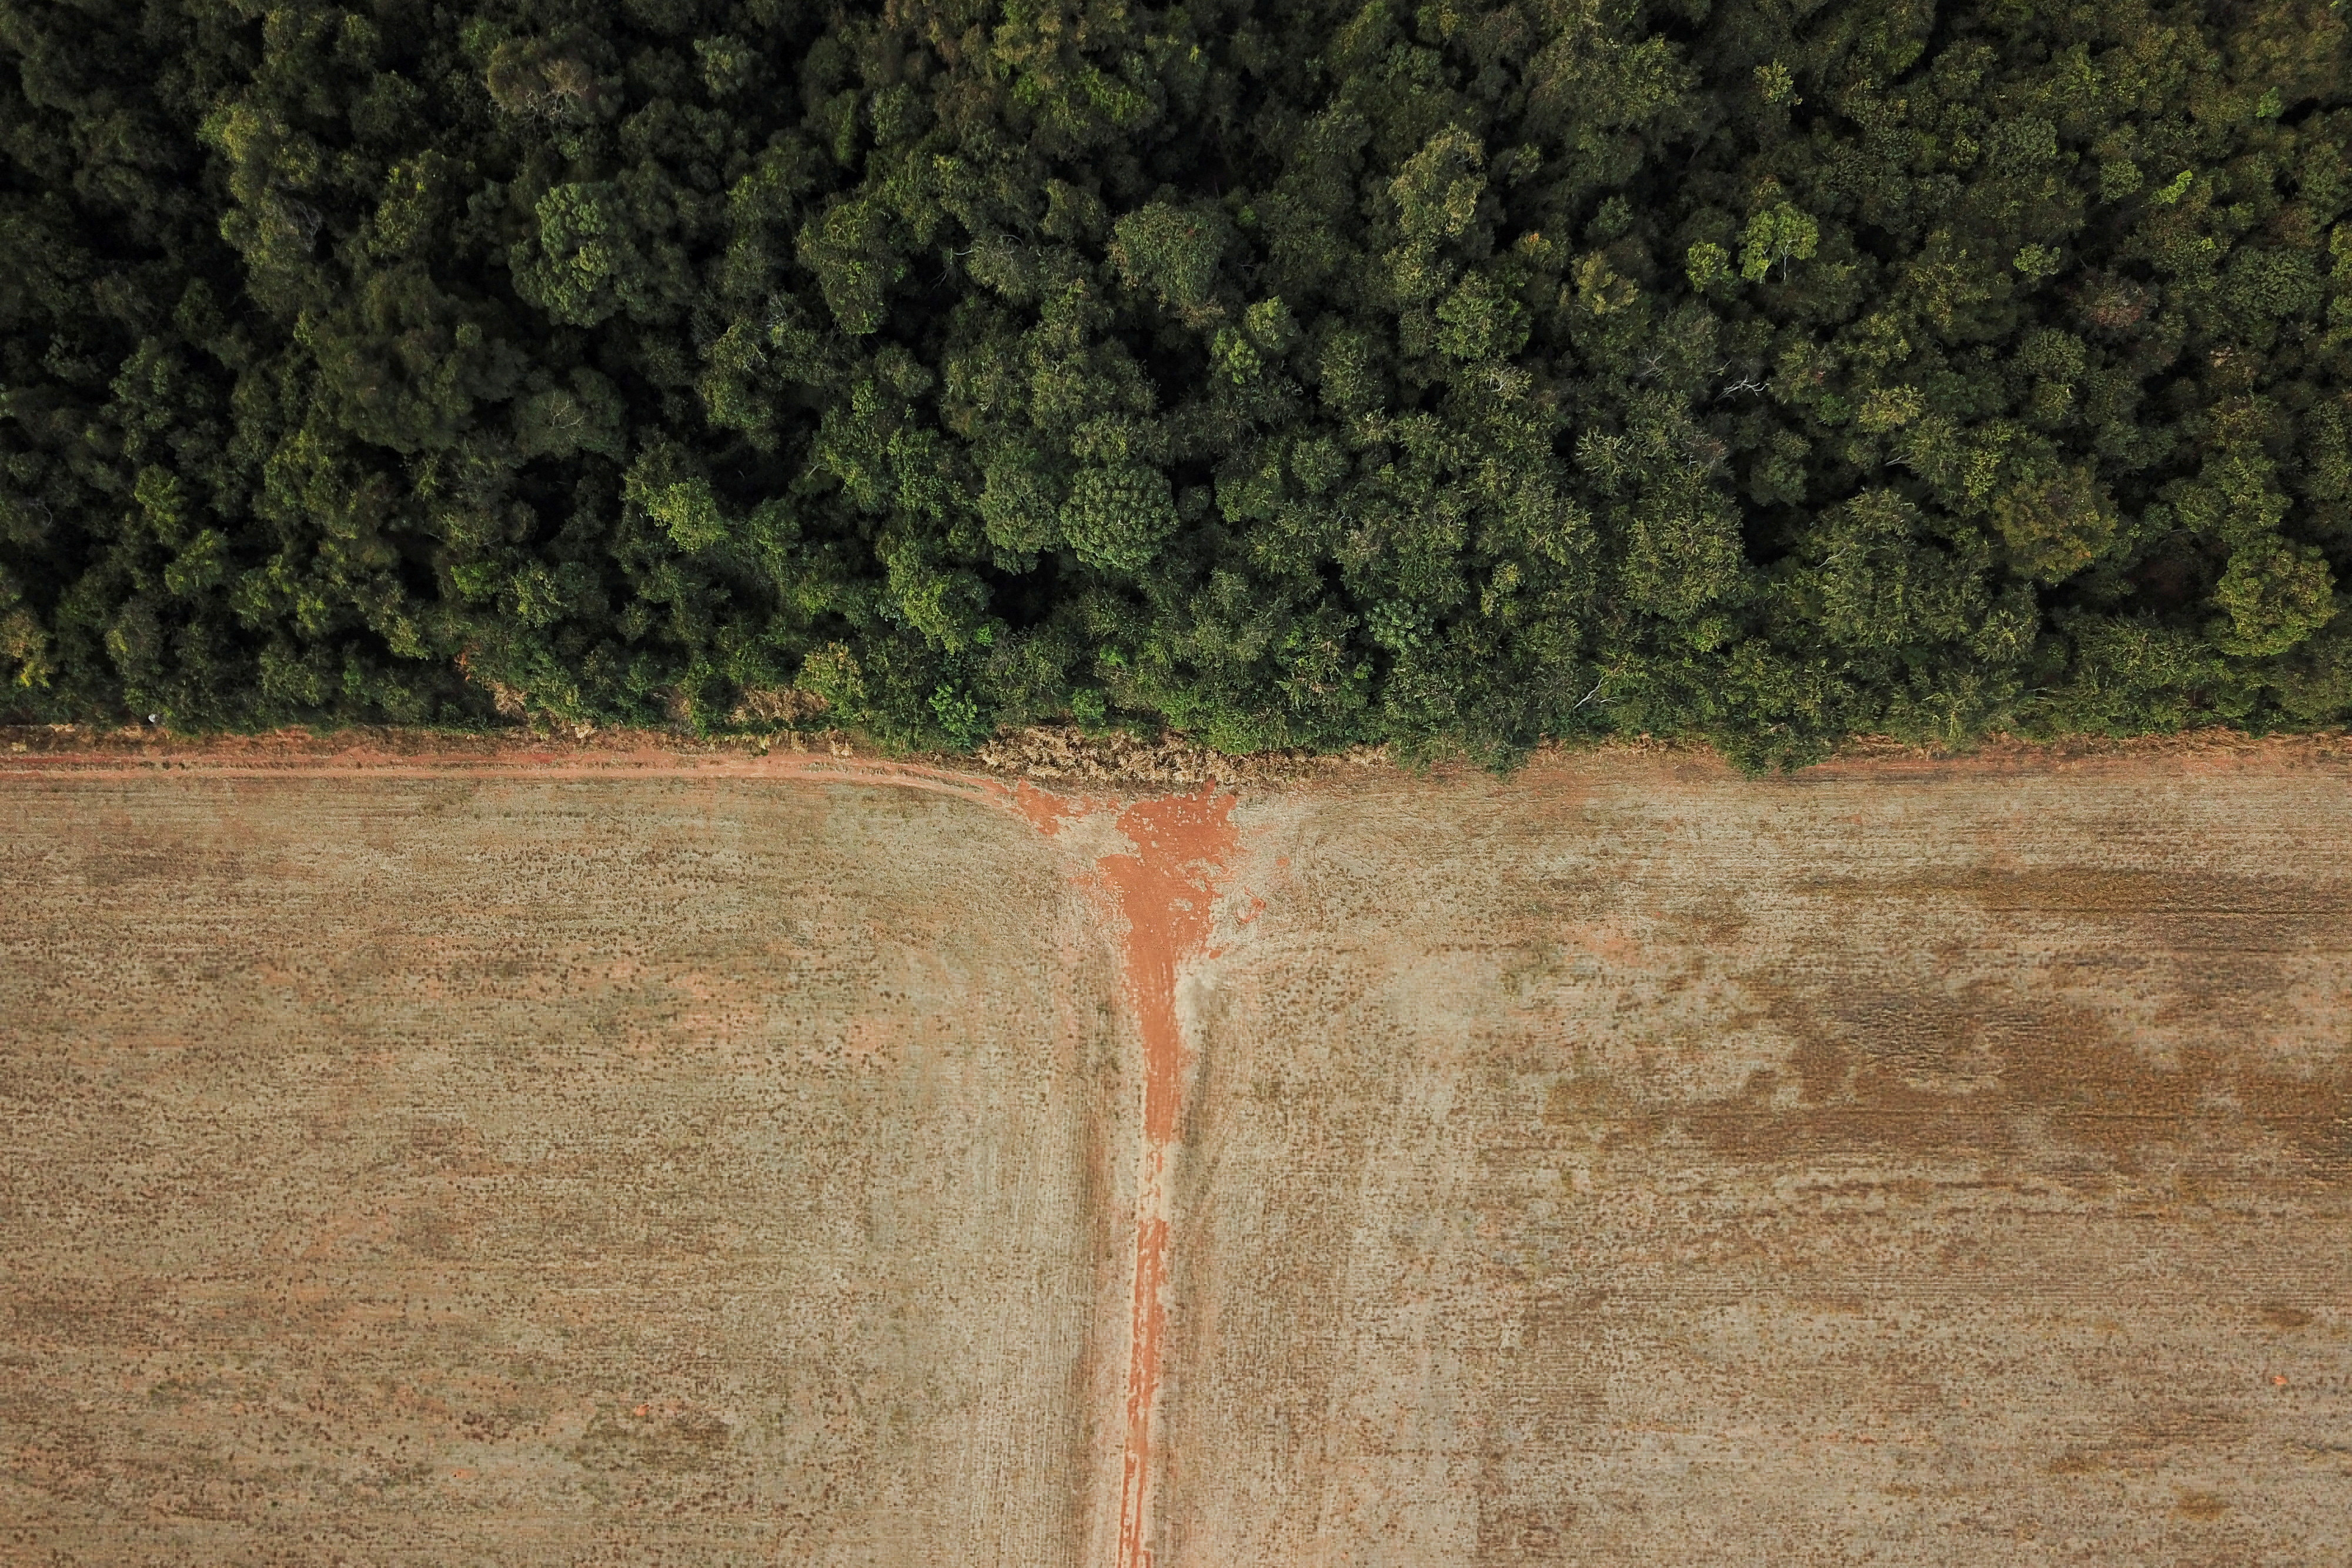 Convertir l'Amazonie à la croissance verte rapporterait 8 milliards de dollars par an au Brésil, prétend une étude